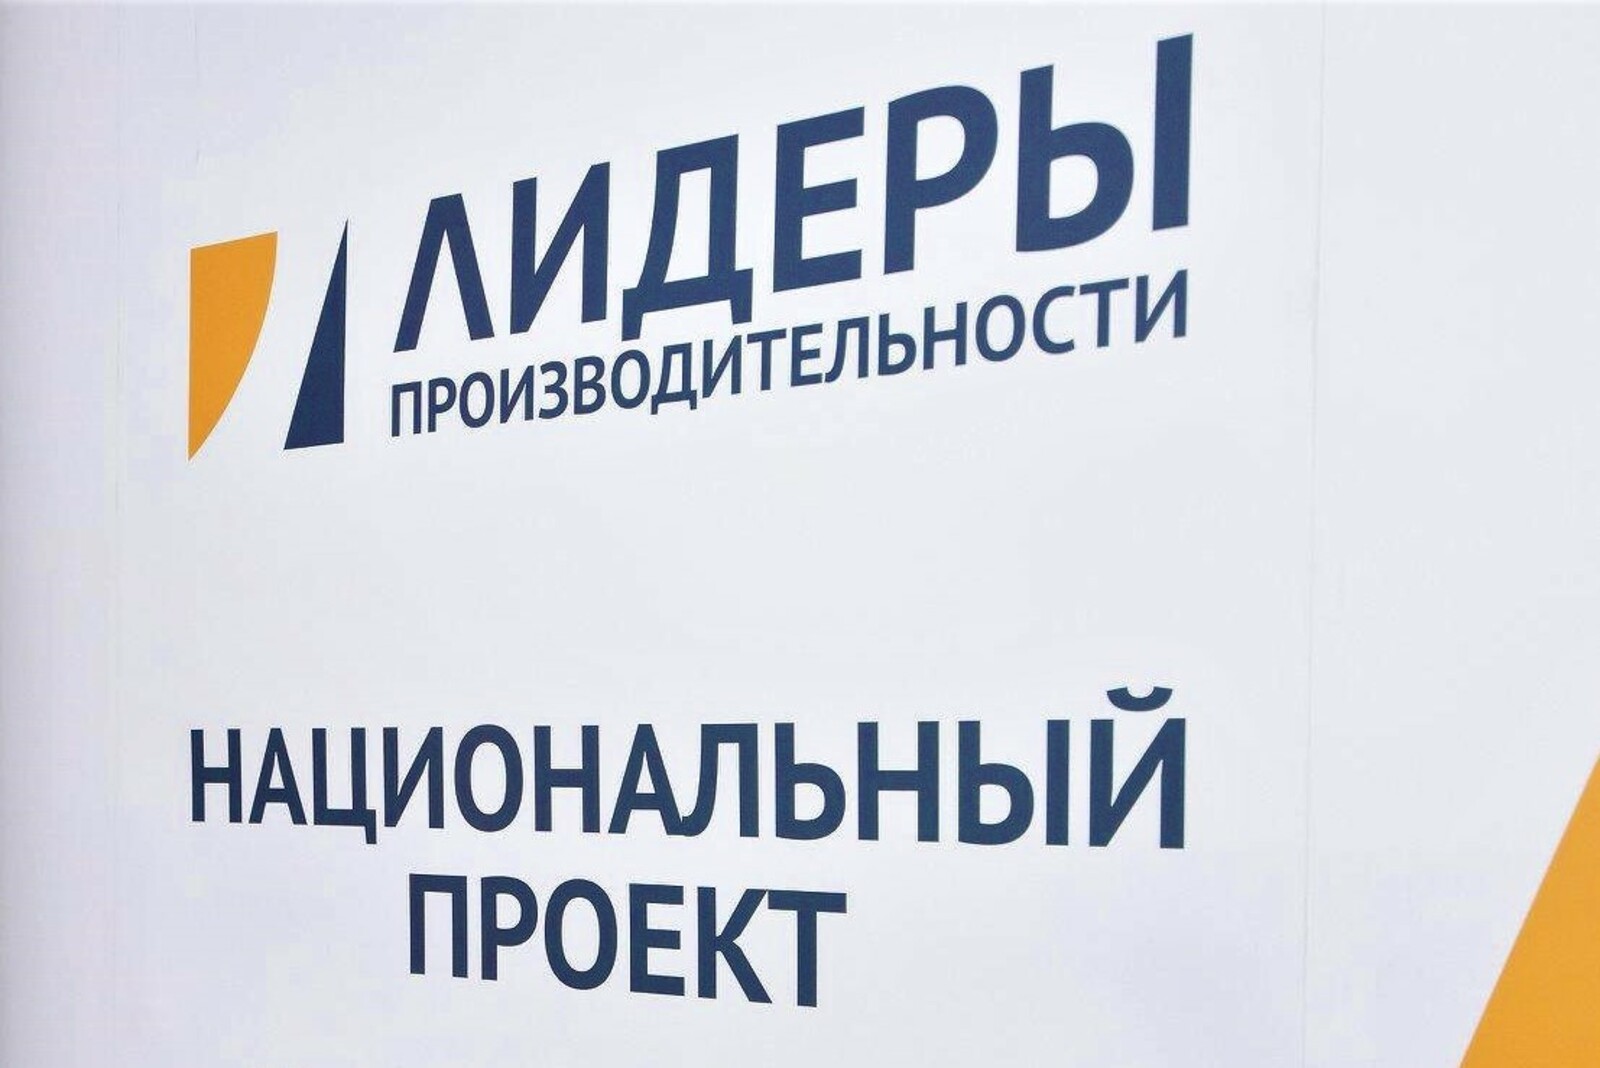 11 руководителей башкирских предприятий повысят квалификацию в рамках нацпроекта «Производительность труда»